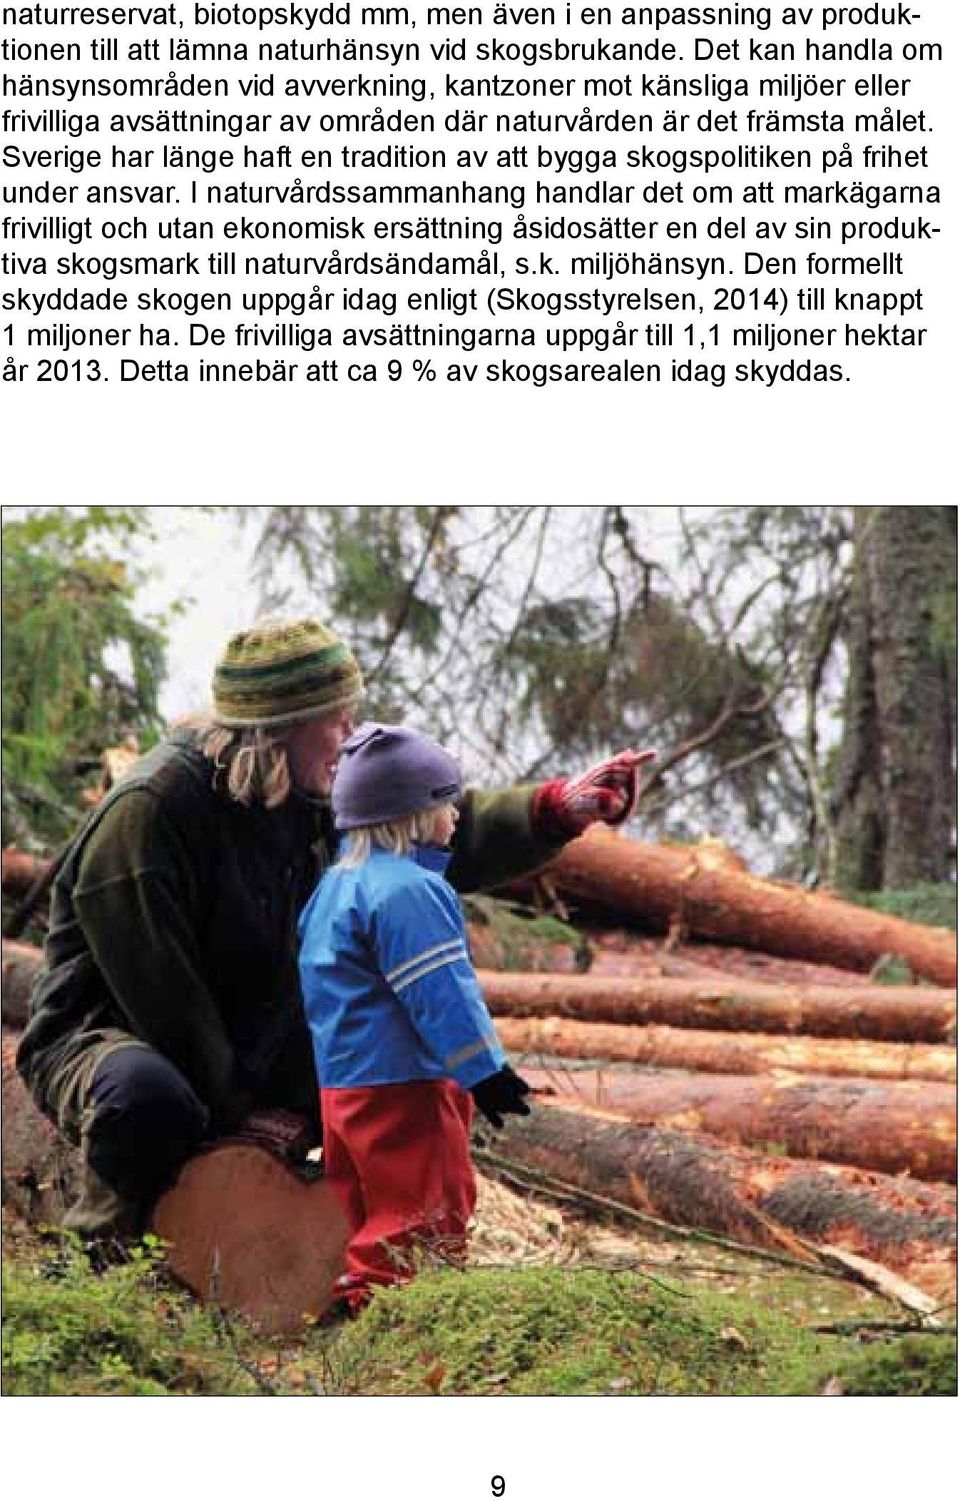 Sverige har länge haft en tradition av att bygga skogspolitiken på frihet under ansvar.